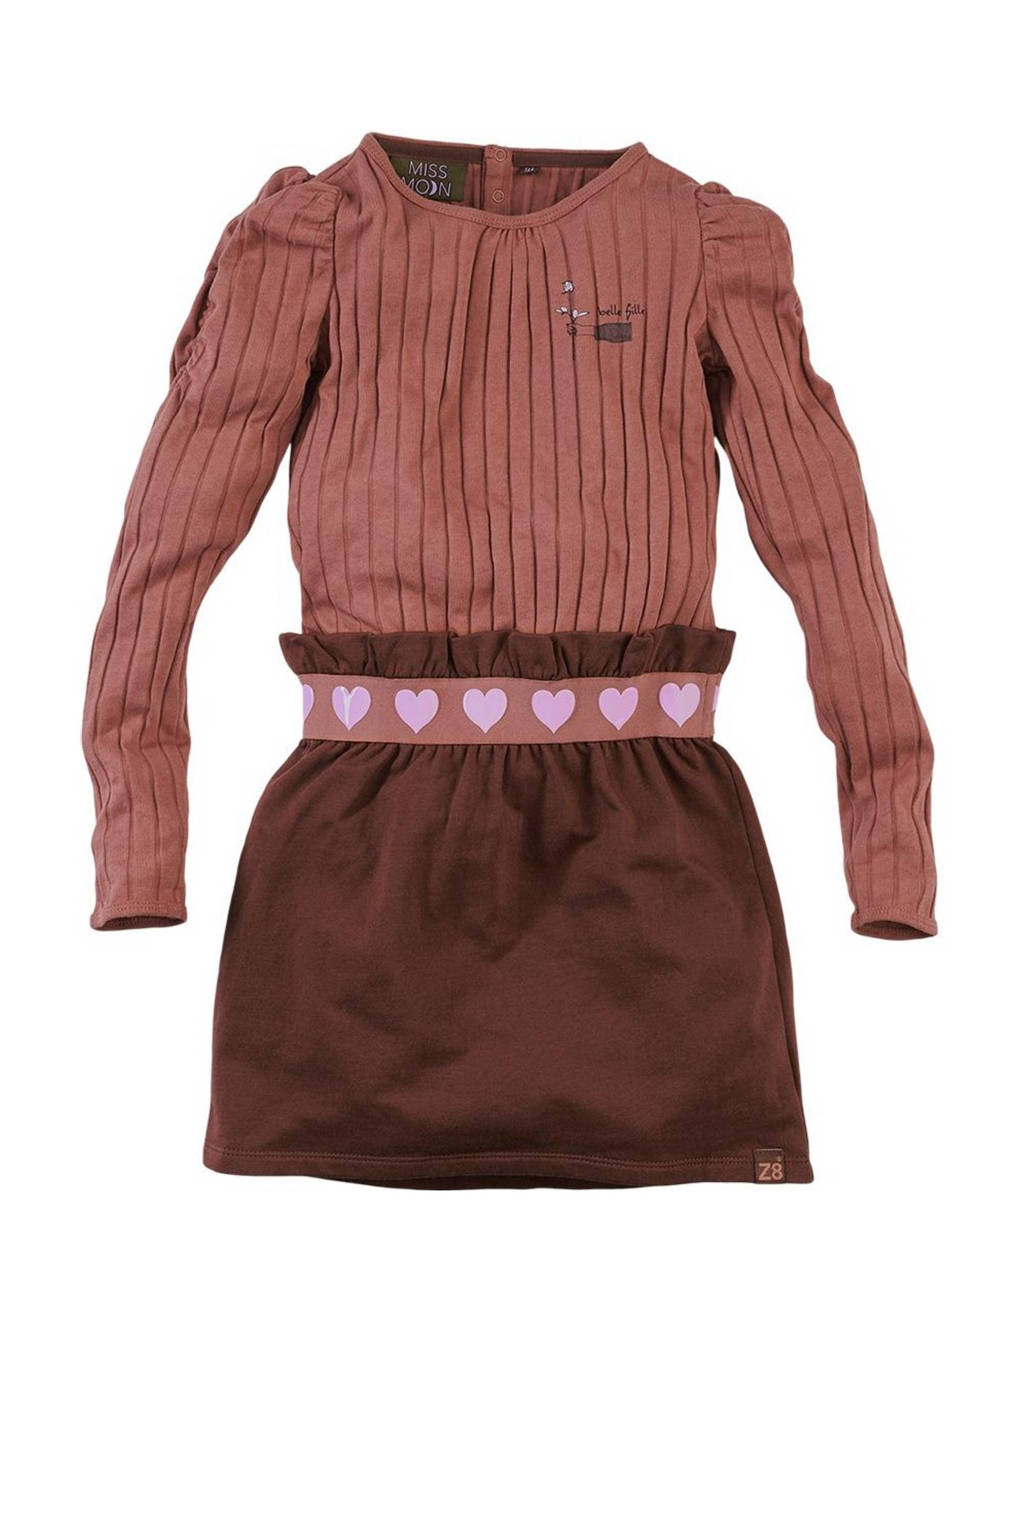 levering probleem draaipunt Z8 ribgebreide jurk Sannah met plooien roestbruin/donkerbruin/lila | wehkamp